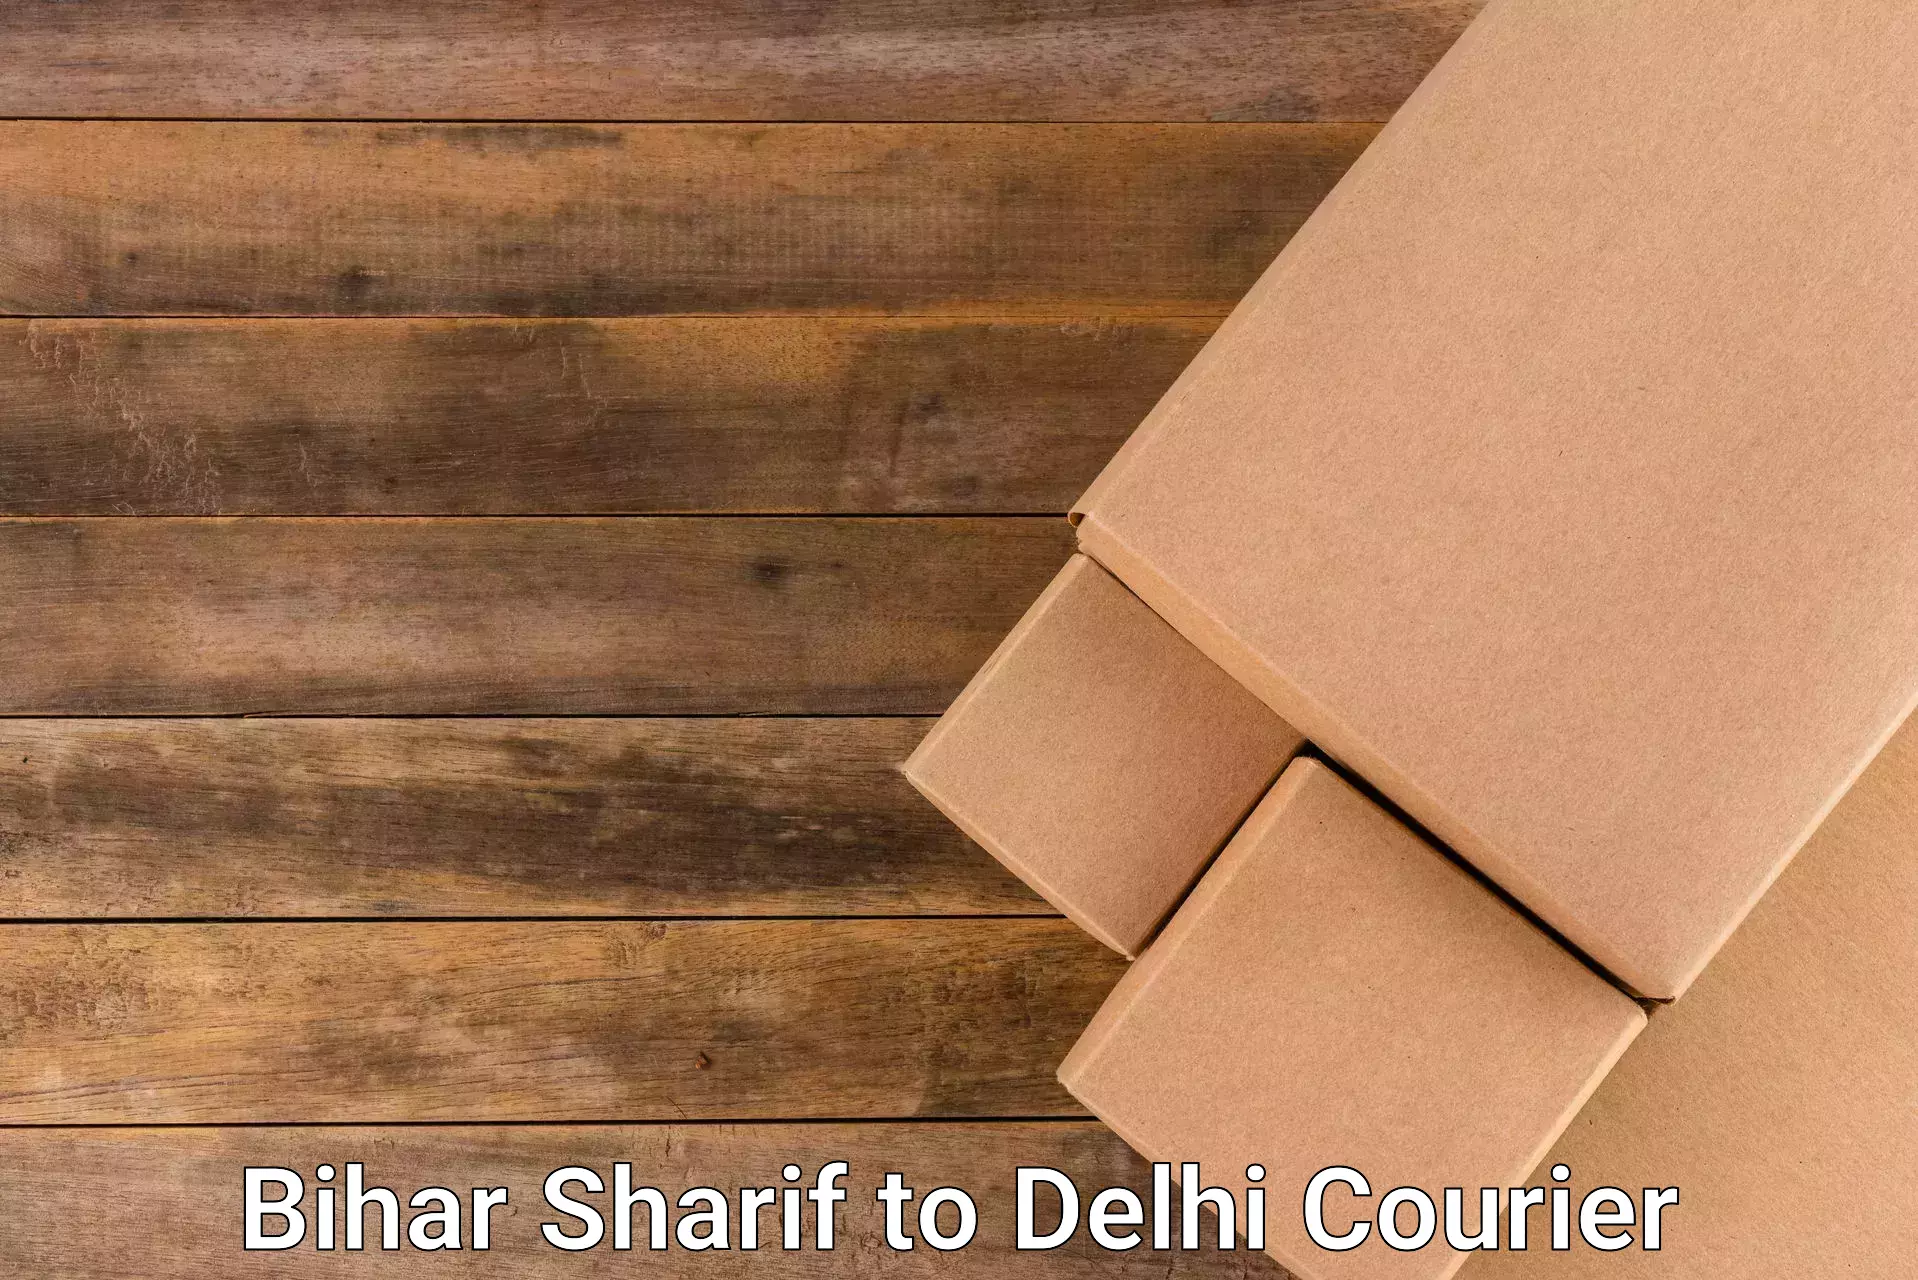 Multi-modal transportation Bihar Sharif to IIT Delhi